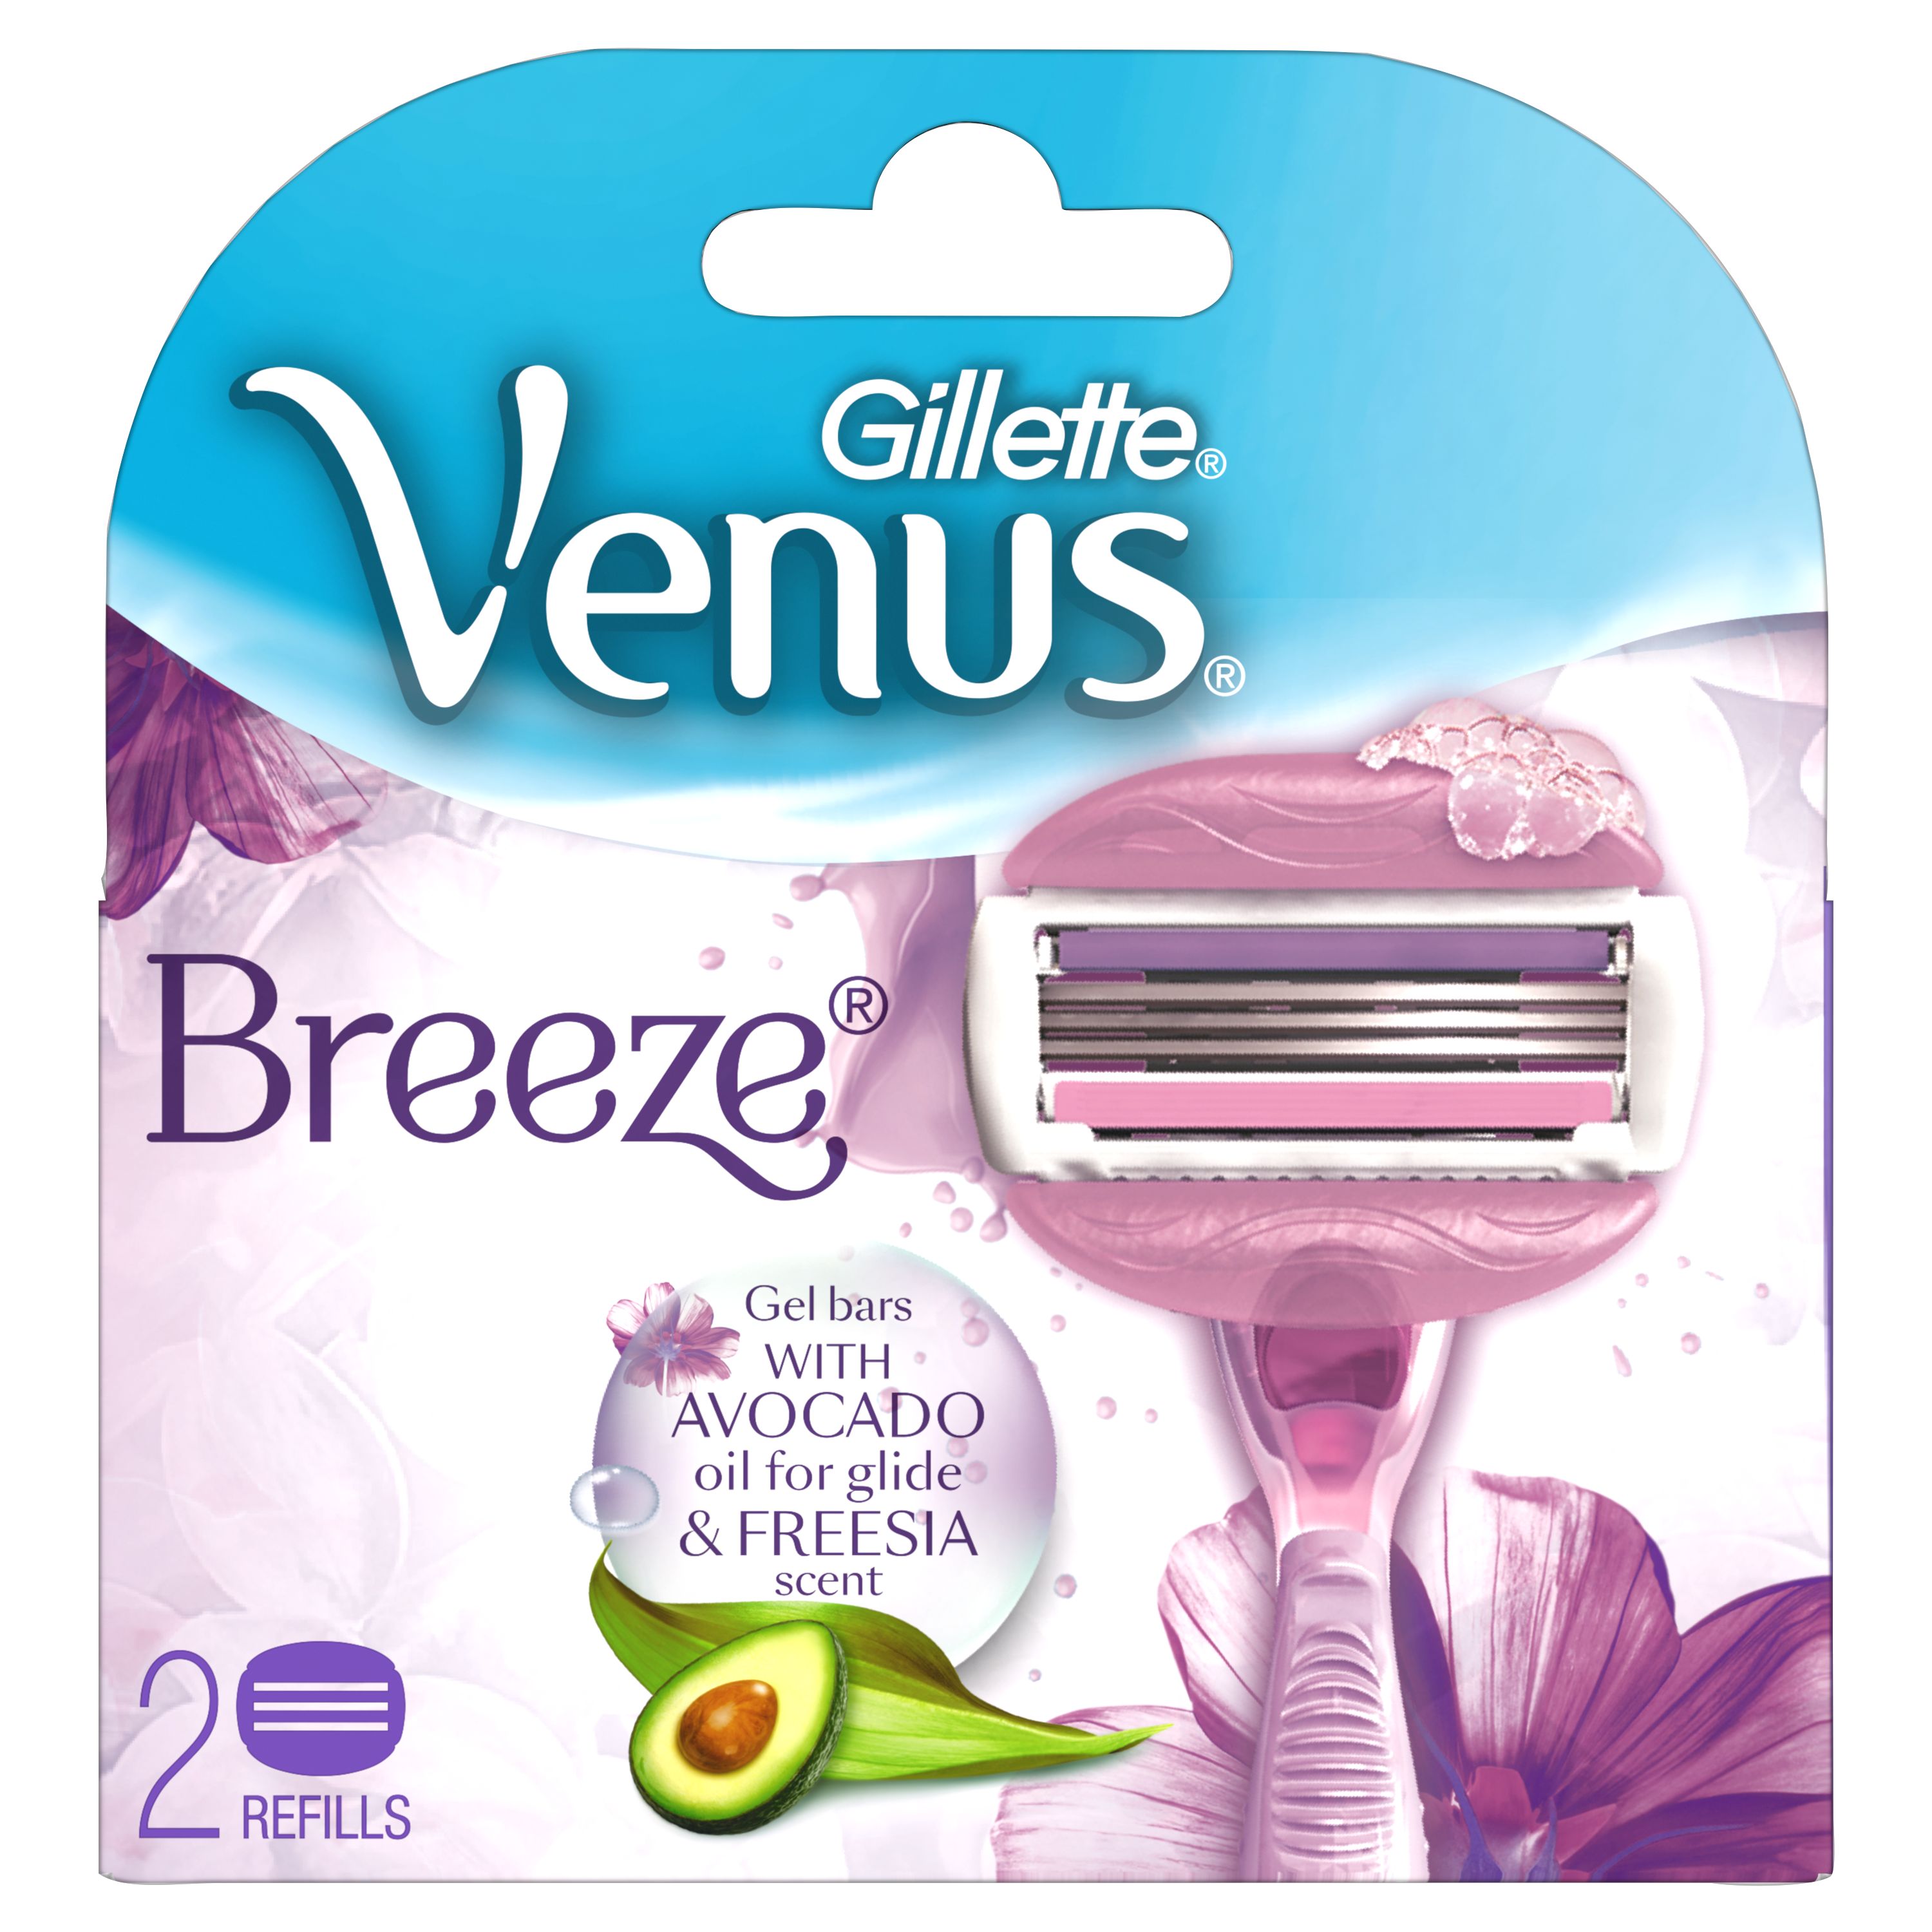 Gillette Venus Breeze Razor Shaving Thank You Gift Pack for Women